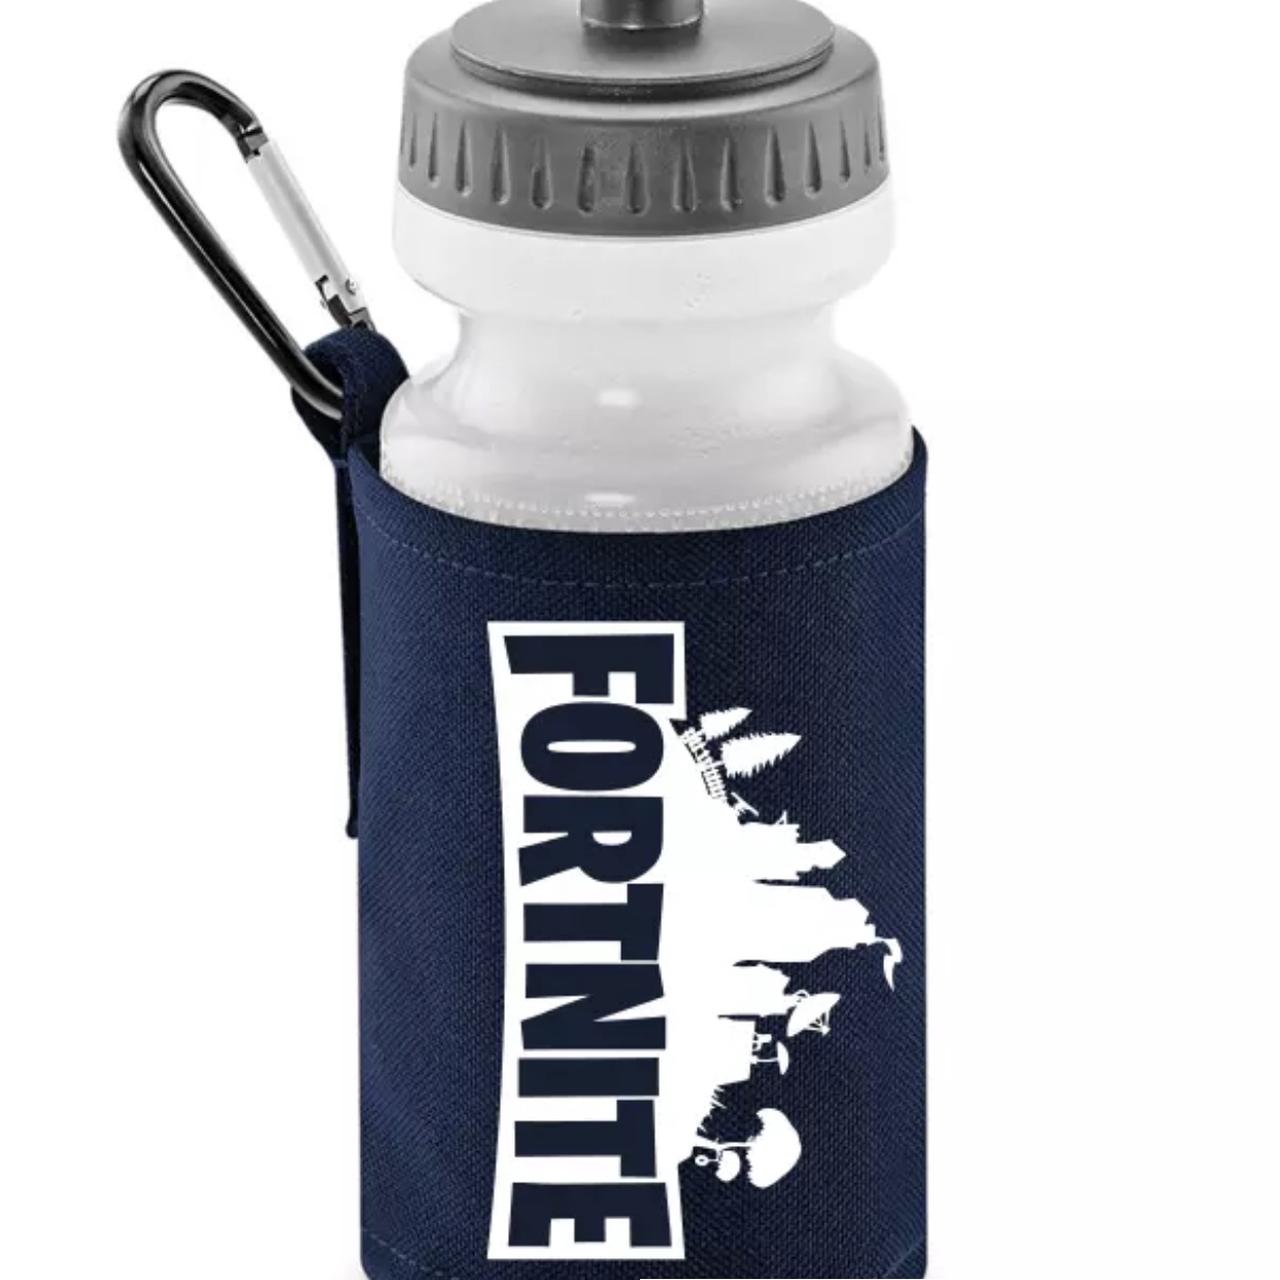 Fortnite water bottle for Sale in El Cajon, CA - OfferUp